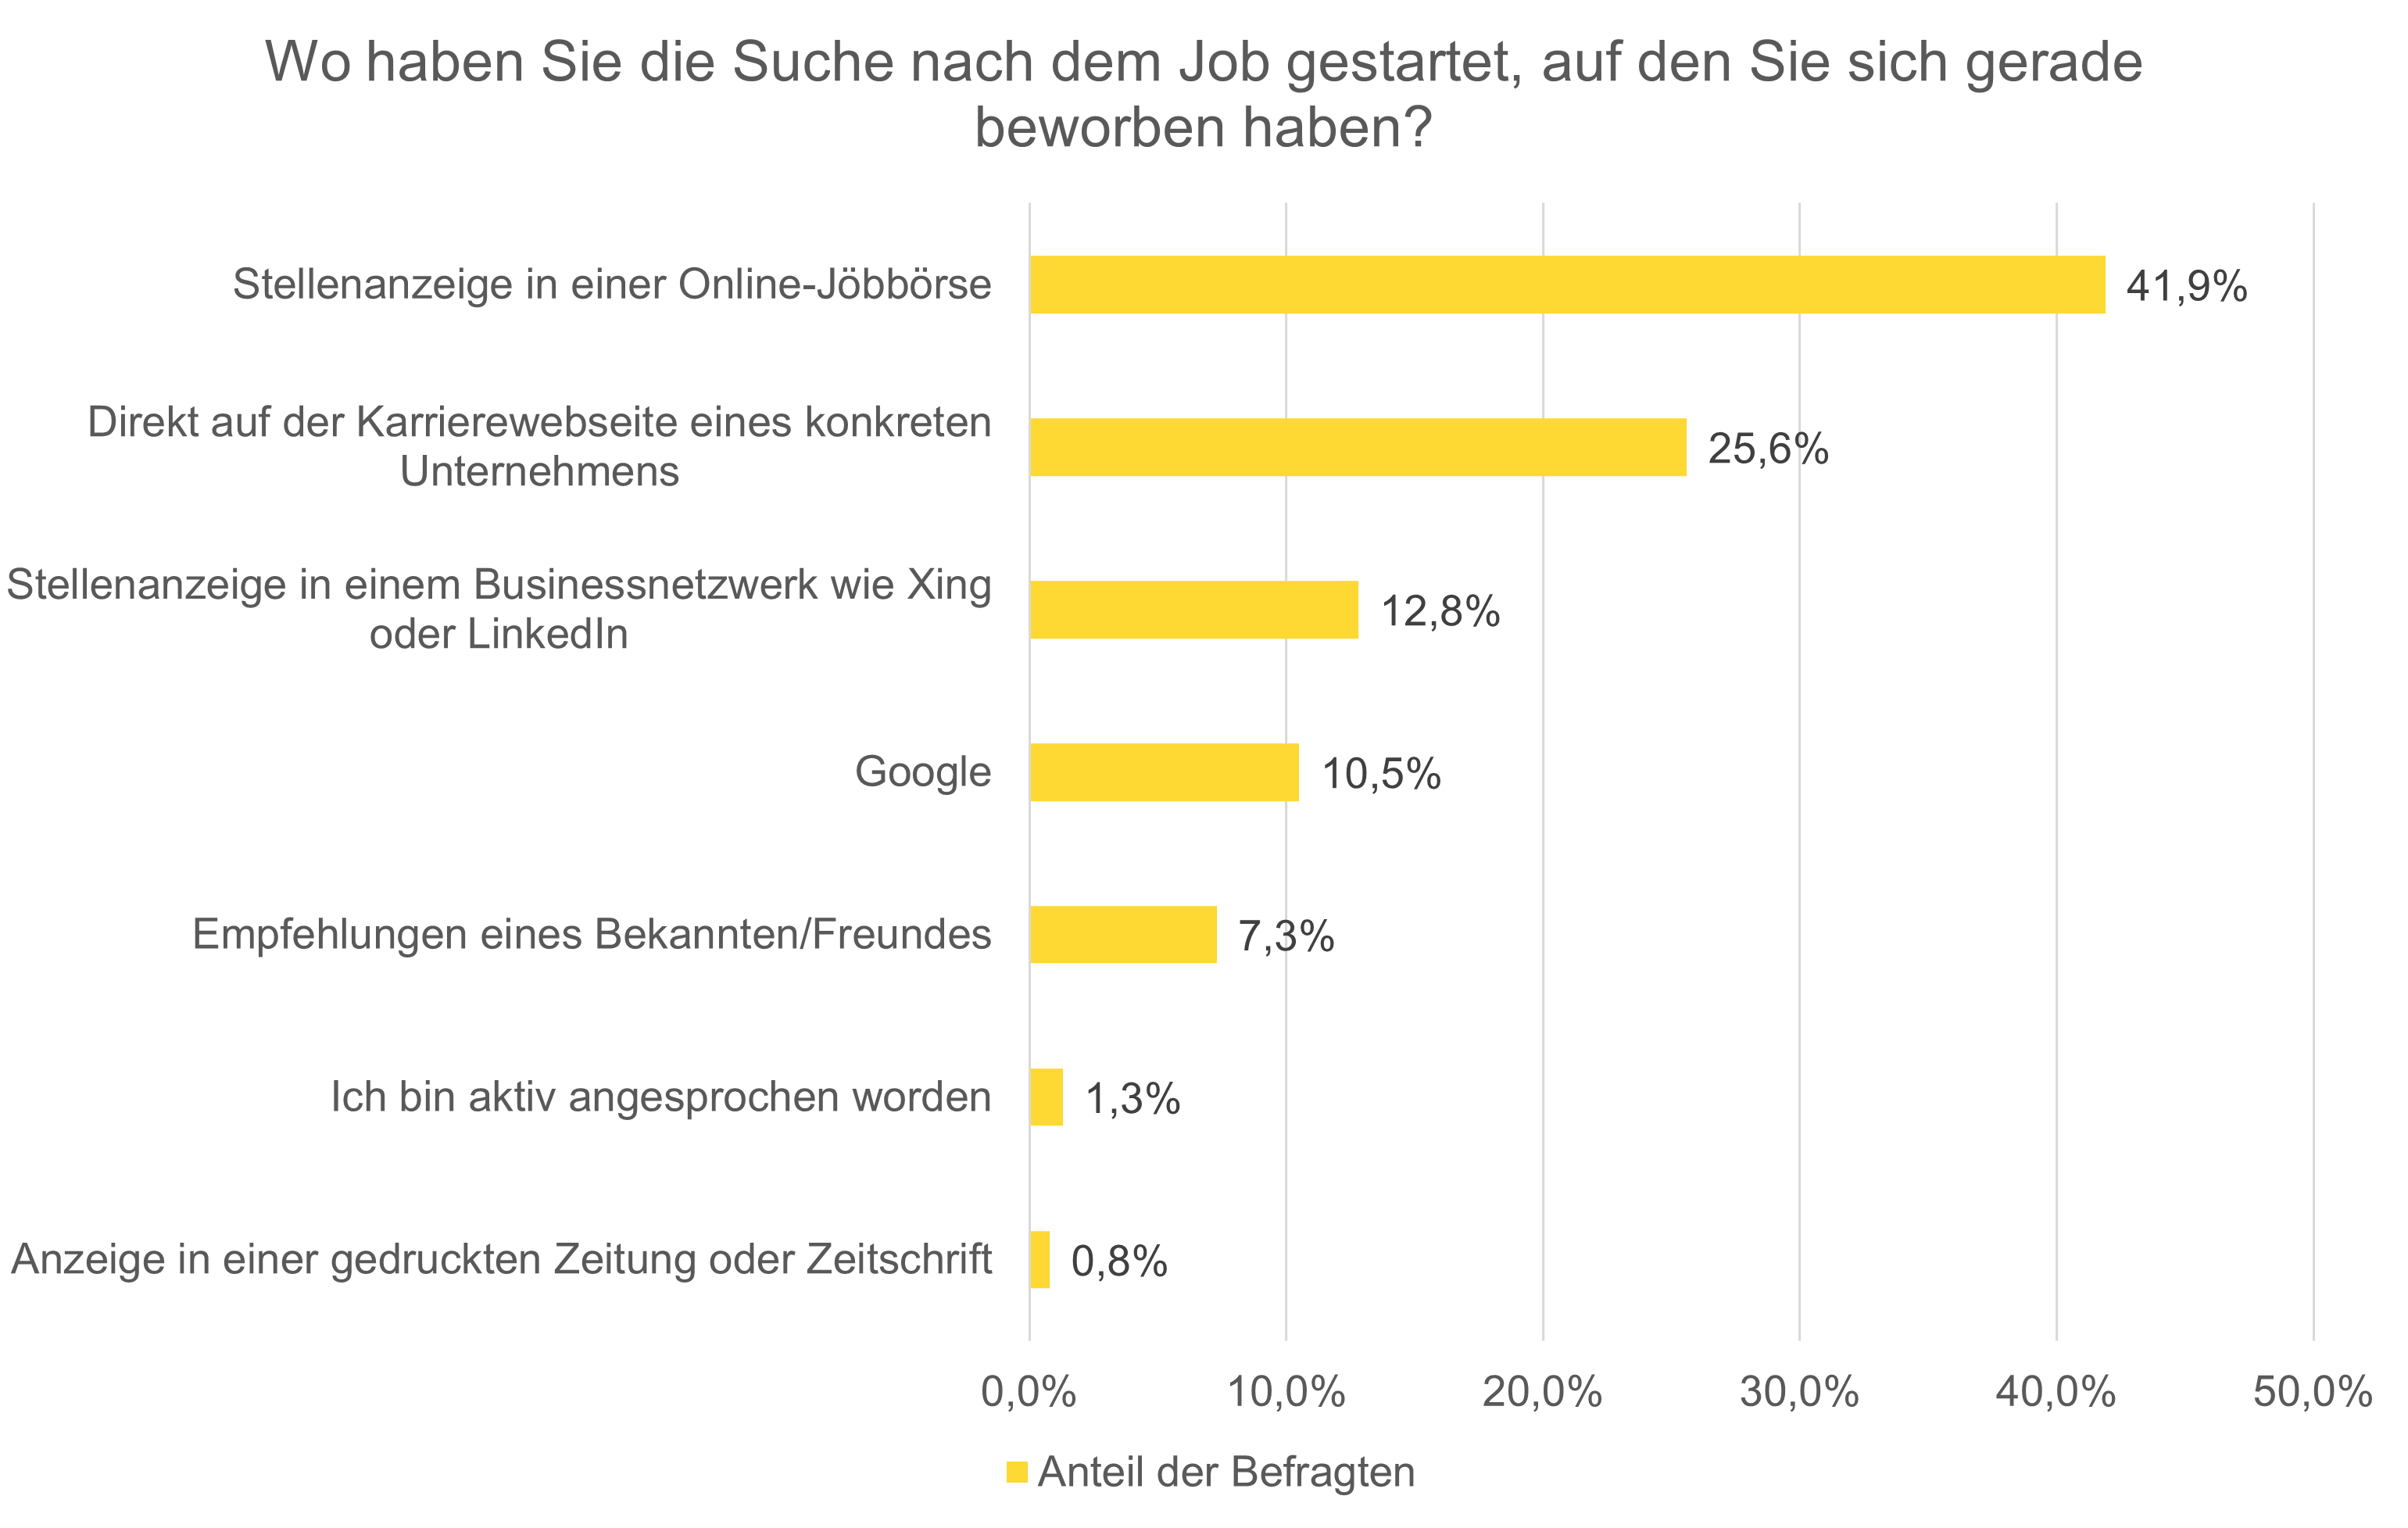 Abbildung 2 Erste Anlaufpunkte von Bewerbern bei der Jobsuche in Deutschland in 2020 (Quelle: Softgarden e-recruiting GmbH 